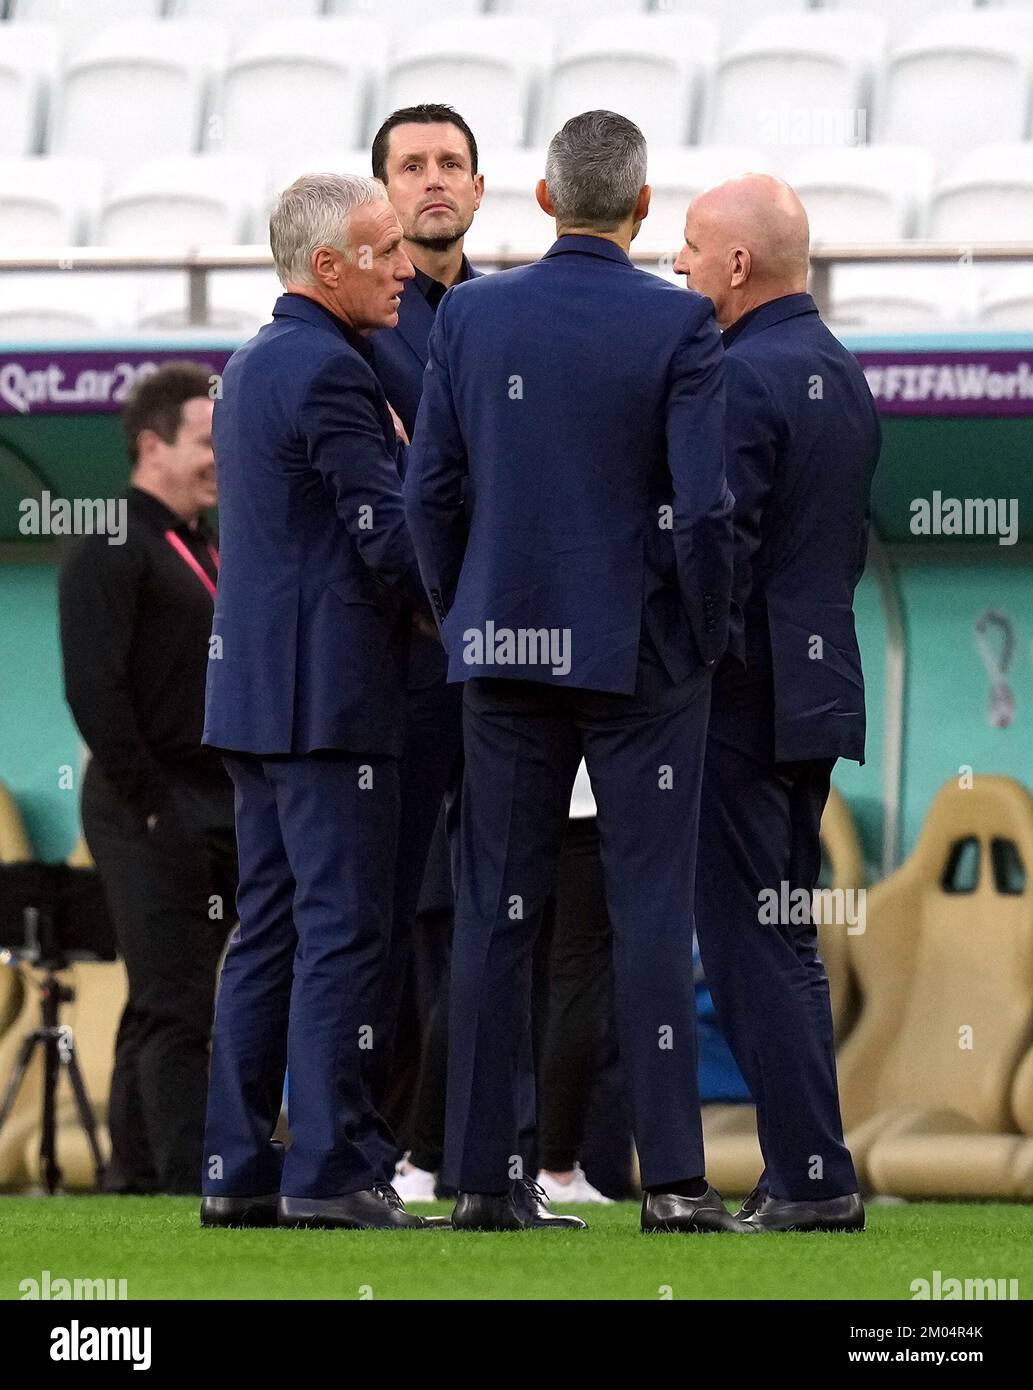 Il manager francese Didier Deschamps (a sinistra) durante il round di sedici partite della Coppa del mondo FIFA allo stadio al Thumama di Doha, in Qatar. Data immagine: Domenica 4 dicembre 2022. Foto Stock